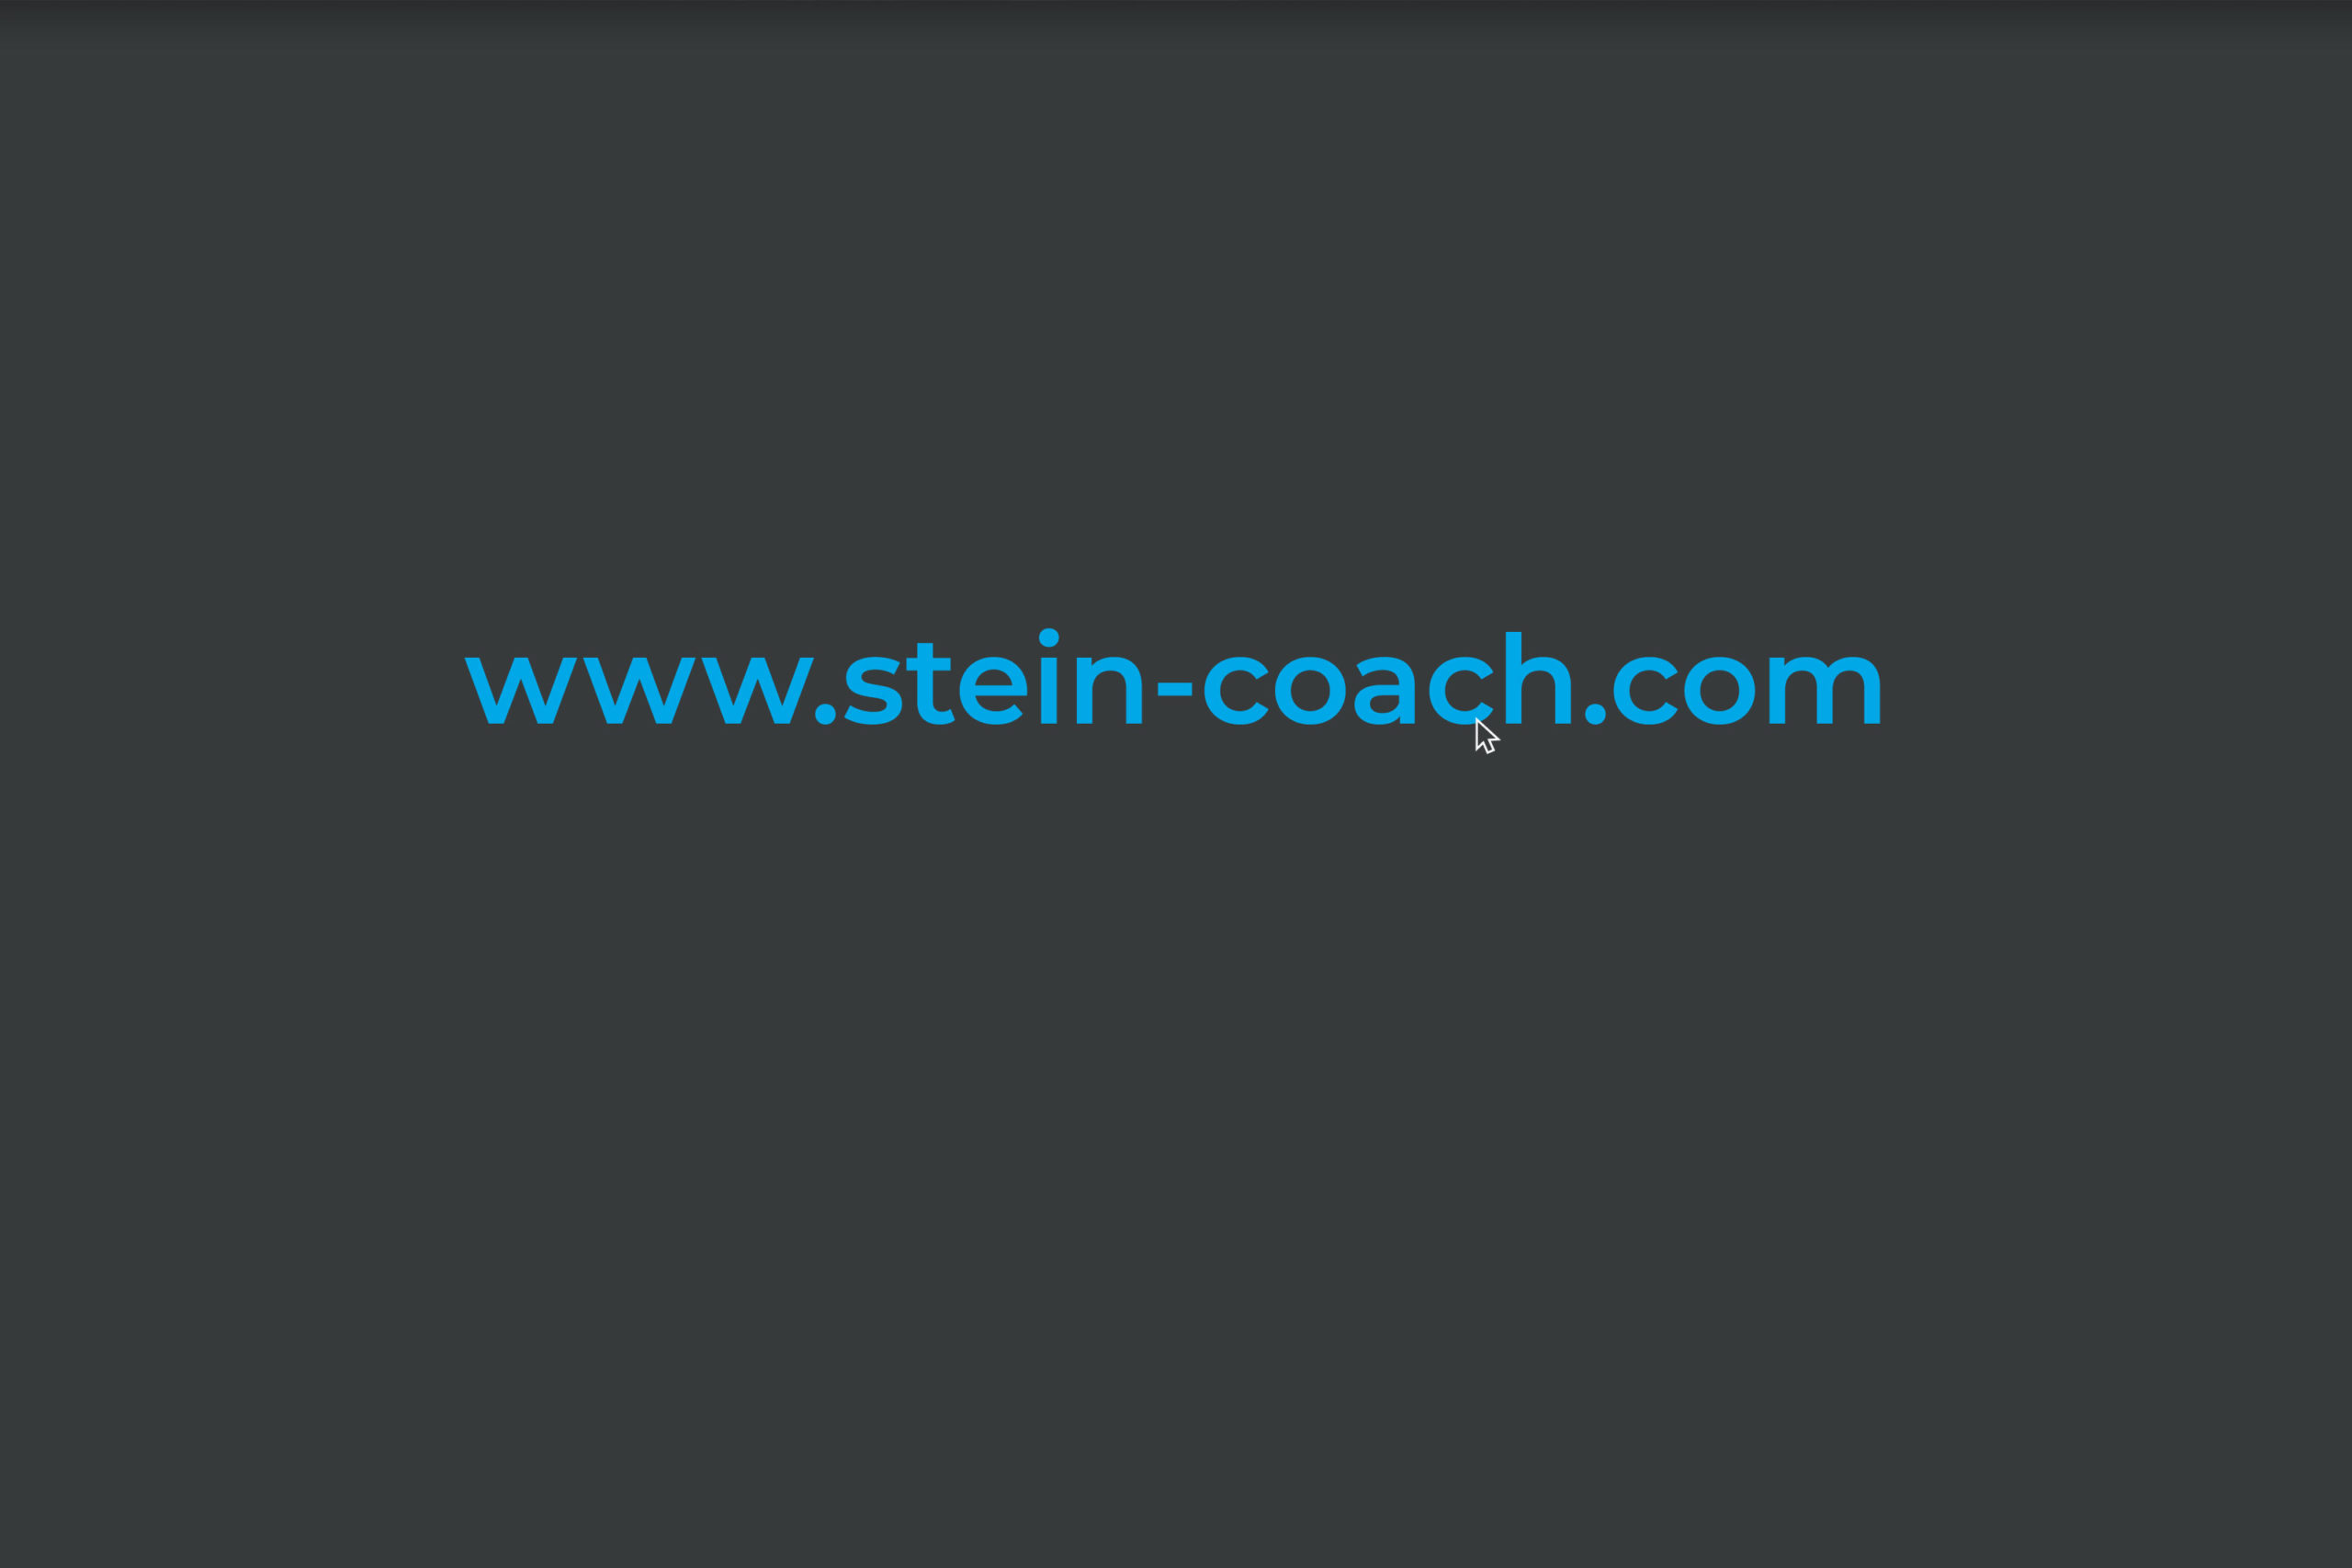 Stein Coaching, Corporate Design Agentur, Designagentur Frankfurt, Grafikdesign, Branding, Brand Design